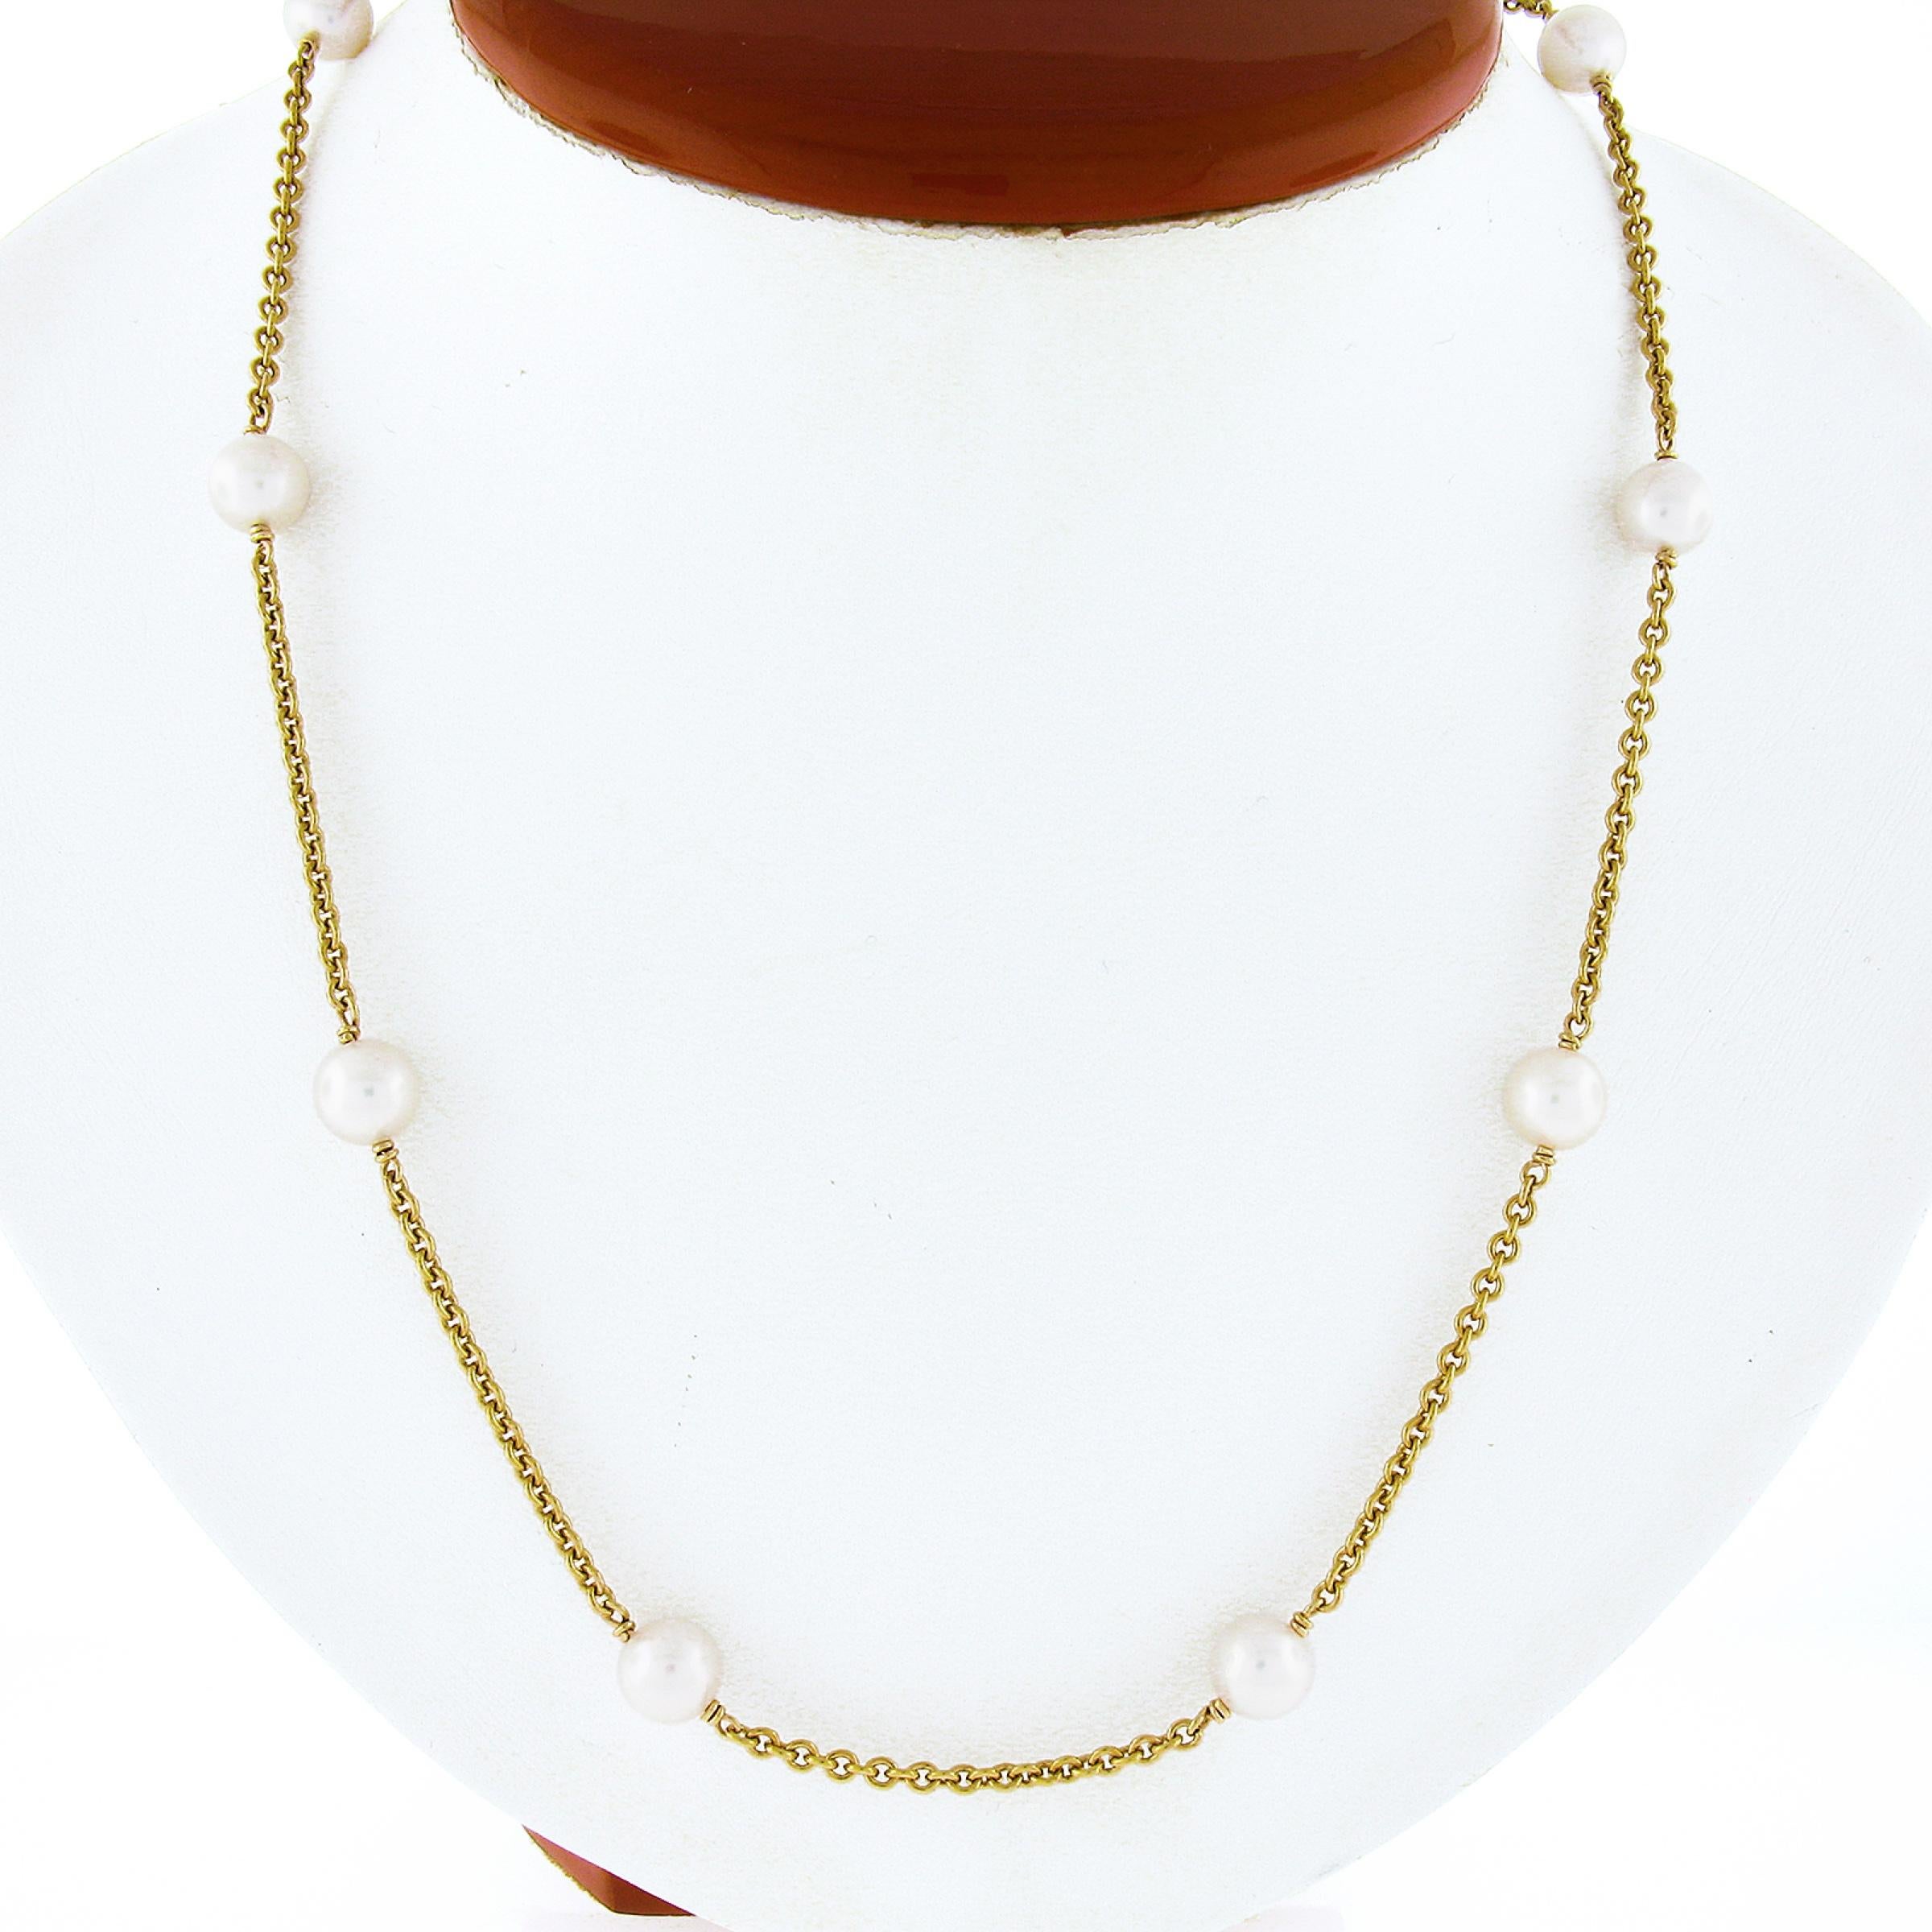 Nous avons ici un magnifique collier de perles à l'unité fabriqué en or jaune massif 14k et comprenant 12 perles de culture rondes réparties de manière régulière sur la chaîne à maillons en câble d'une longueur de 23 pouces. Ces merveilleuses perles